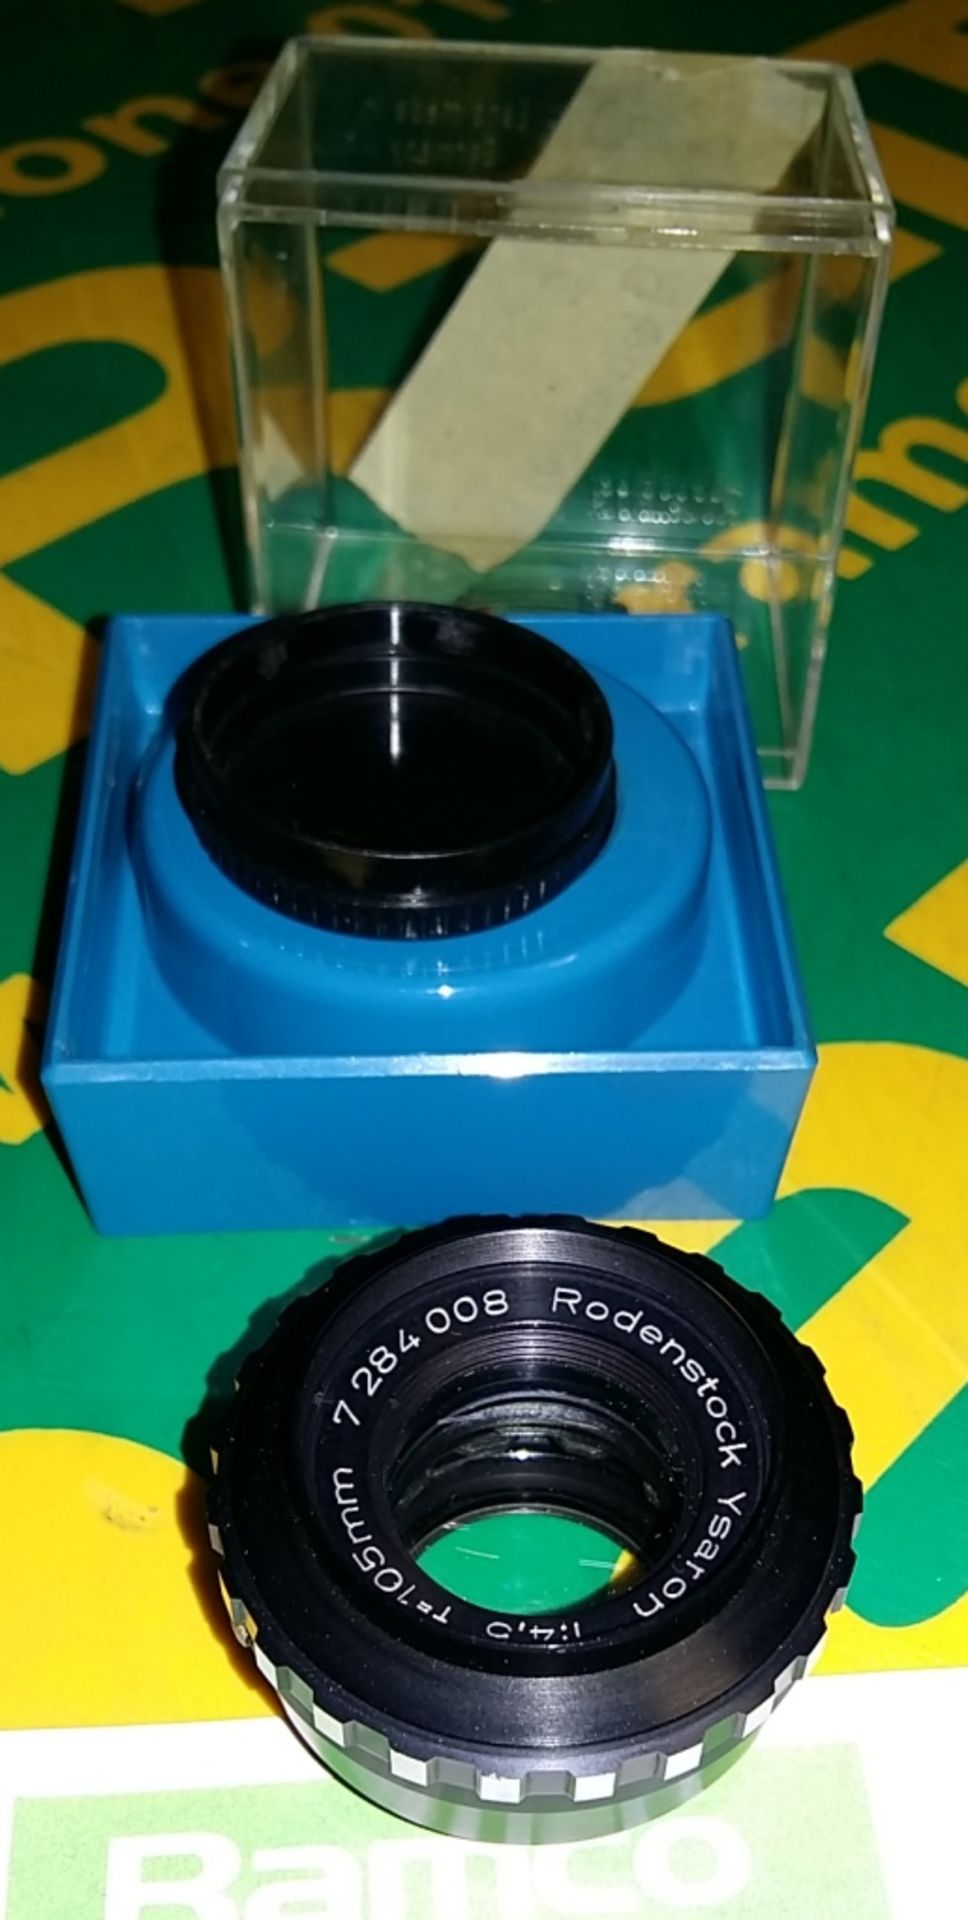 Rodenstock Ysaron 1:4,5 f=105mm enlarging lens